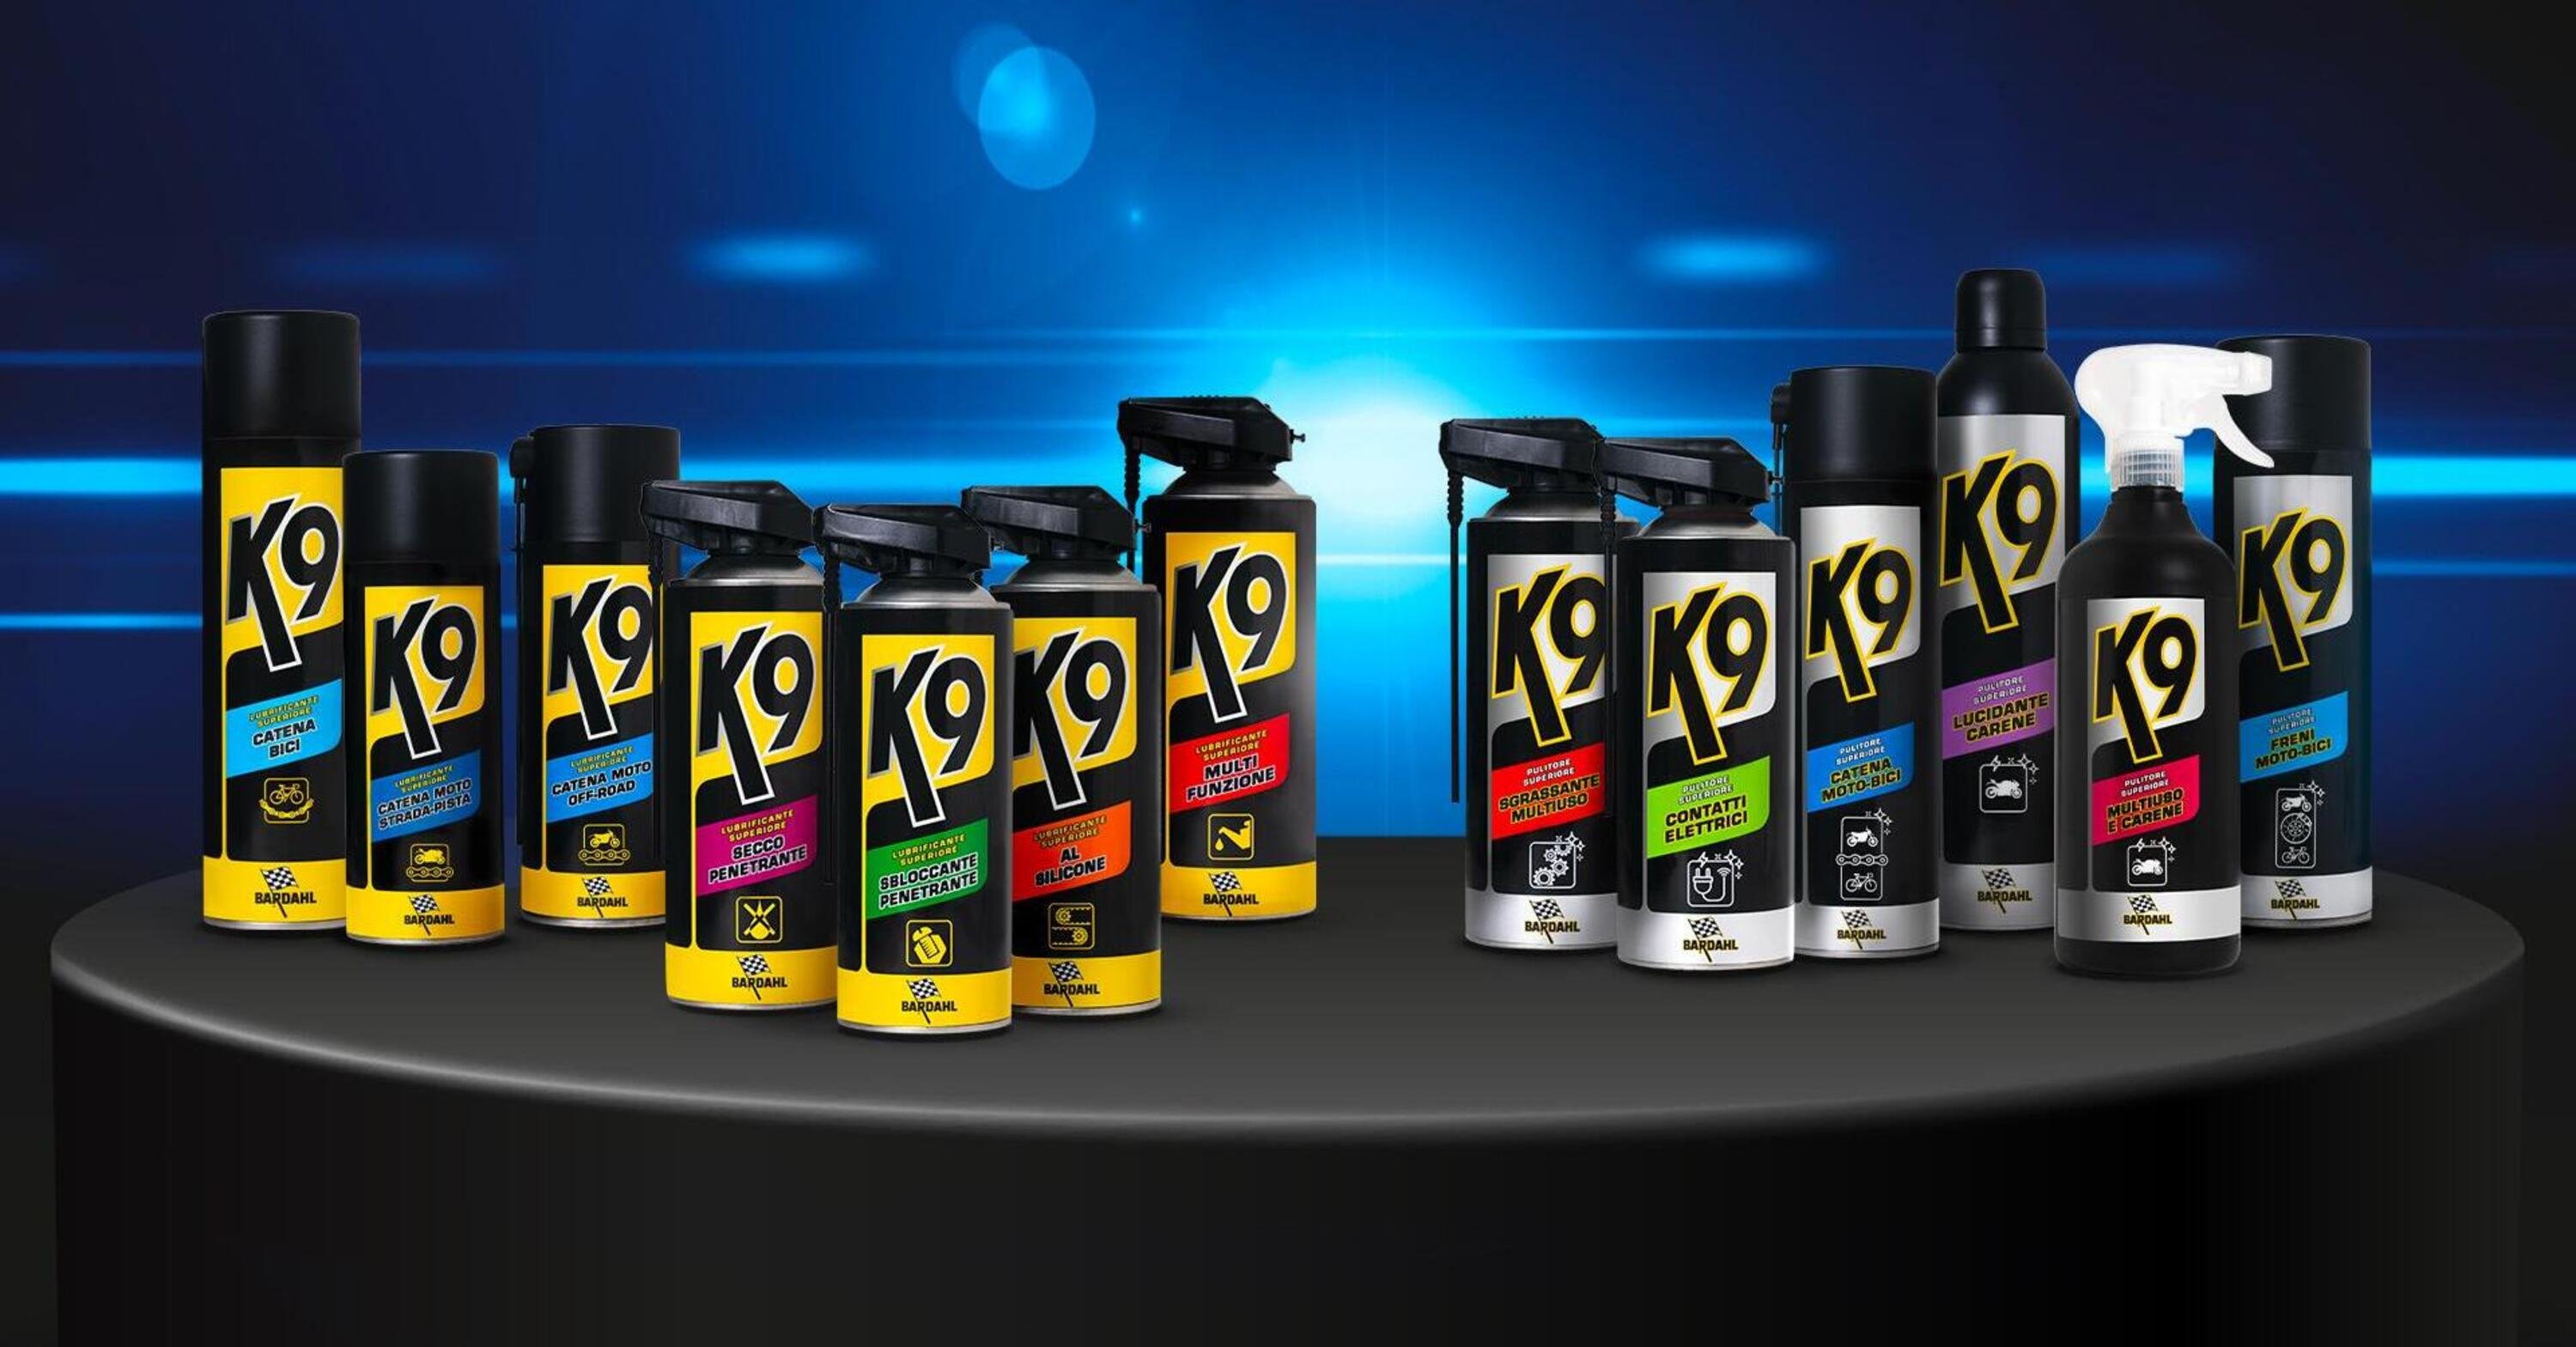 Bardahl presenta K9, una nuova linea di lubrificanti e pulitori